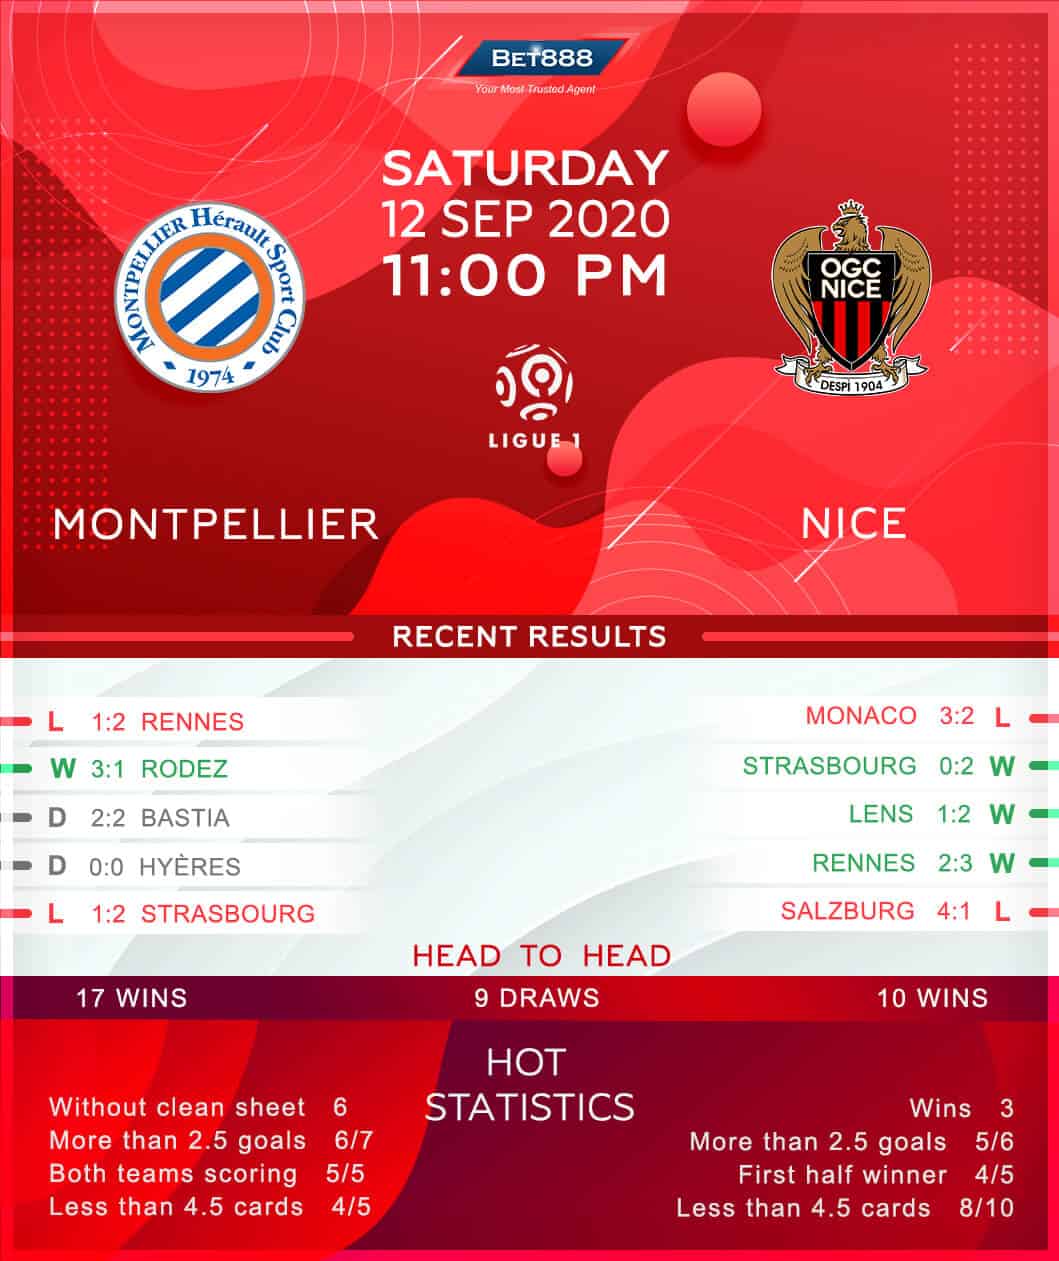 Montpellier vs Nice 12/09/20